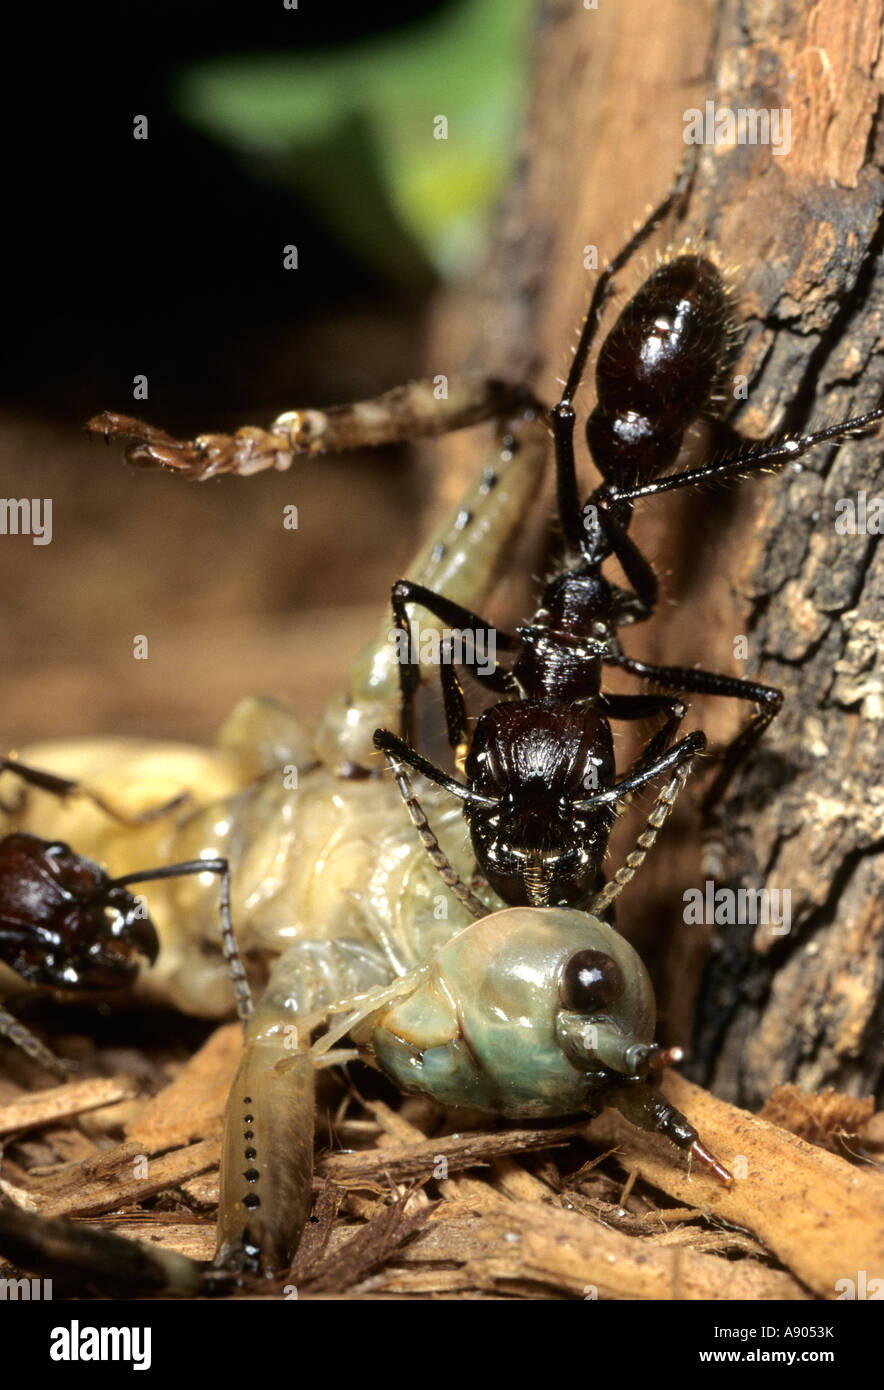 Cincinatti Zoo. Paraponera clavata. Wie bullet Ant, einem der größten Ameisen in Südamerika mit den meisten schmerzhaften Stich bekannt. Stockfoto